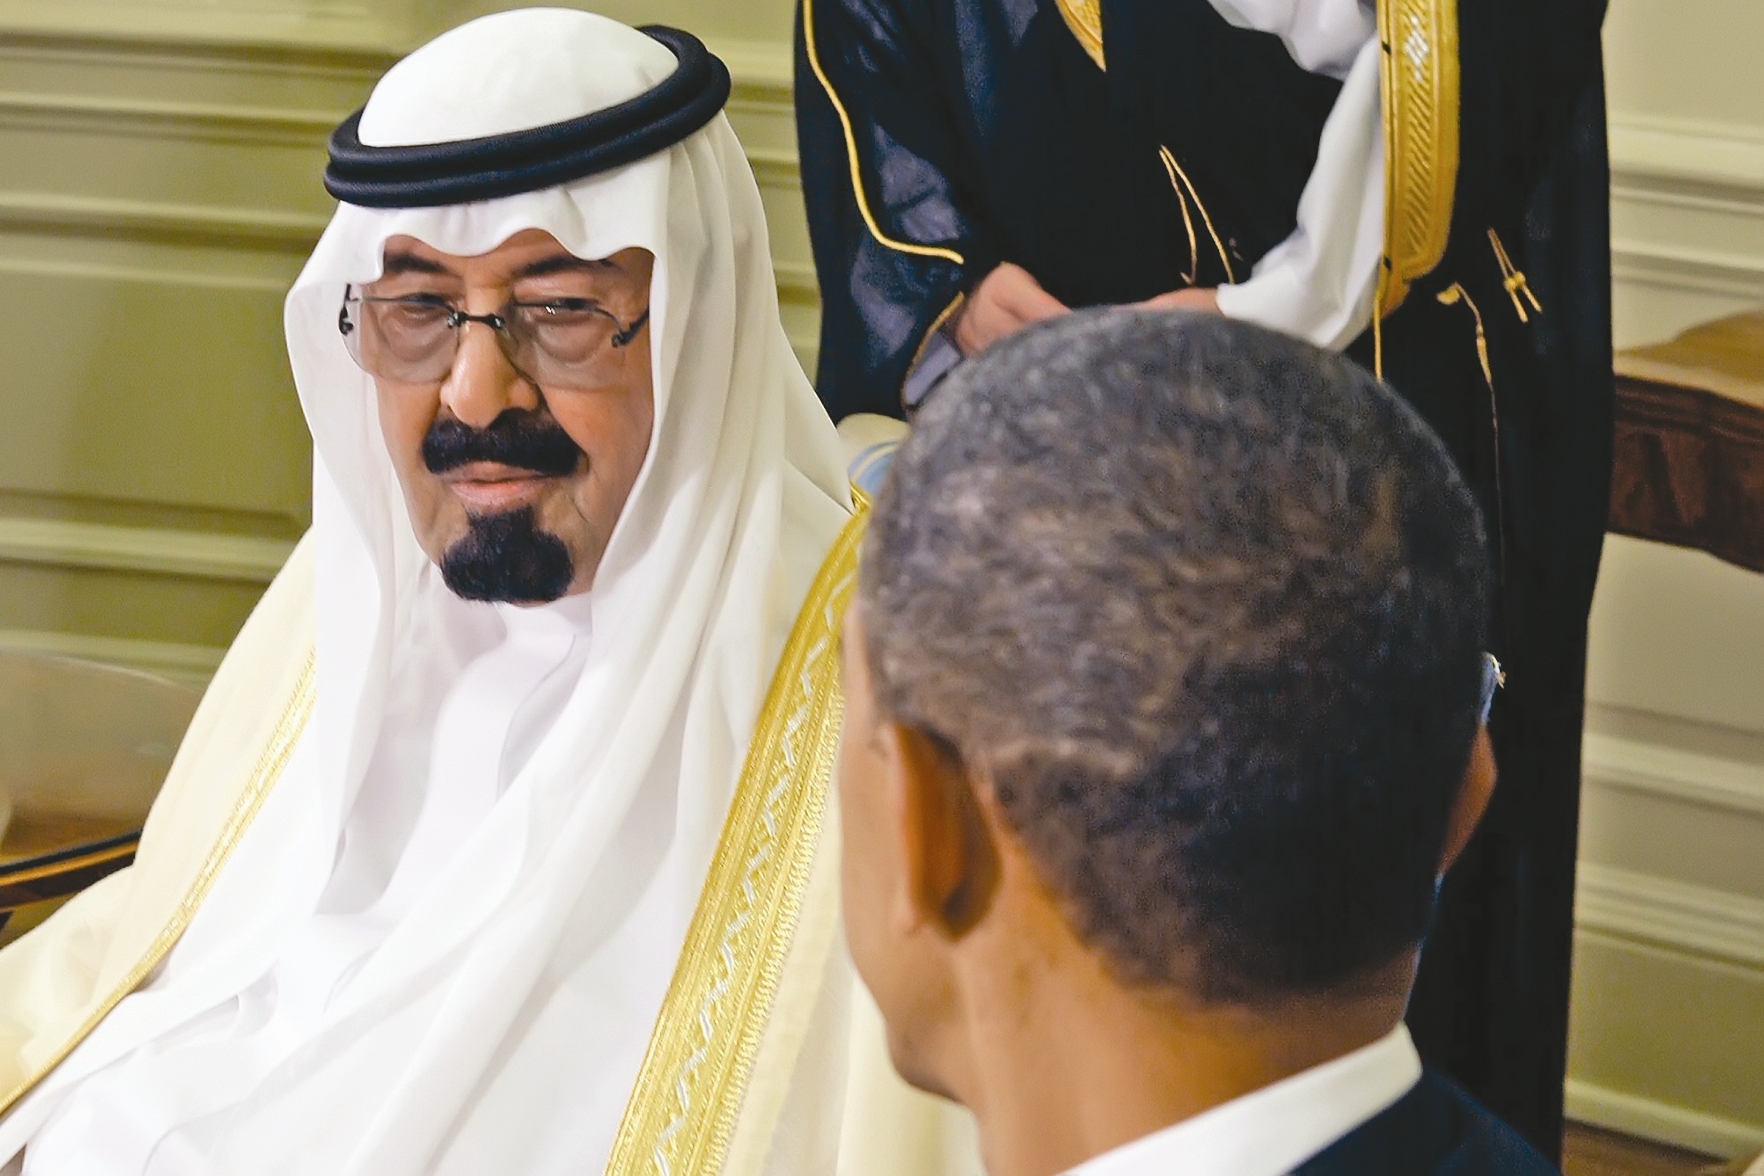 اوباما در سال ۲۰۰۹ در مزرعه ای در حومه ریاض با شاه عربستان دیدار کرد  اما روابط دو کشور اکنون تیره و